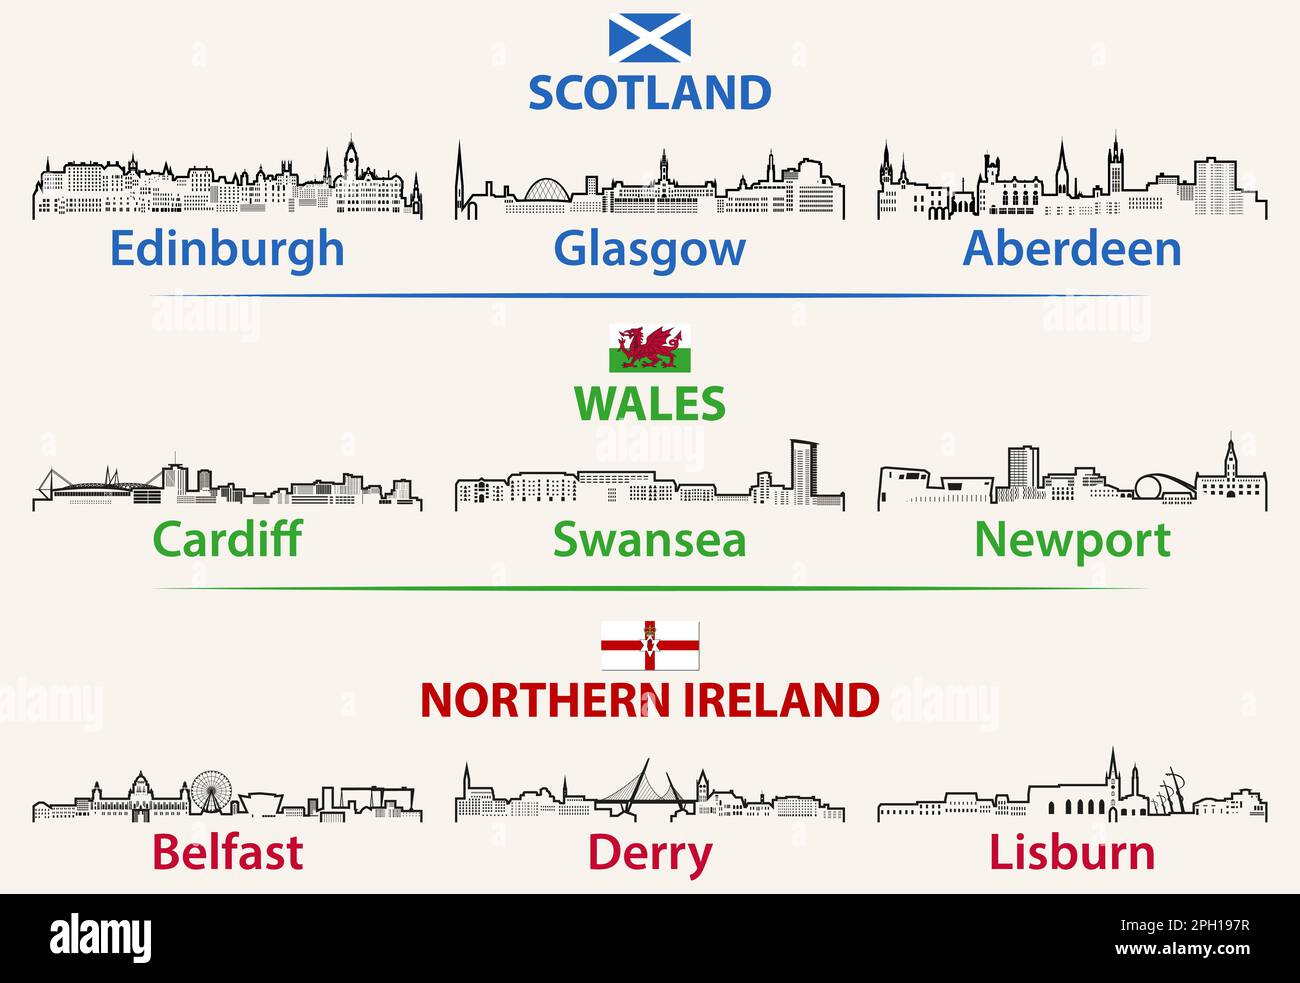 Städte in Schottland, Wales und Nordirland zeichnen sich durch die Skyline aus Stock Vektor